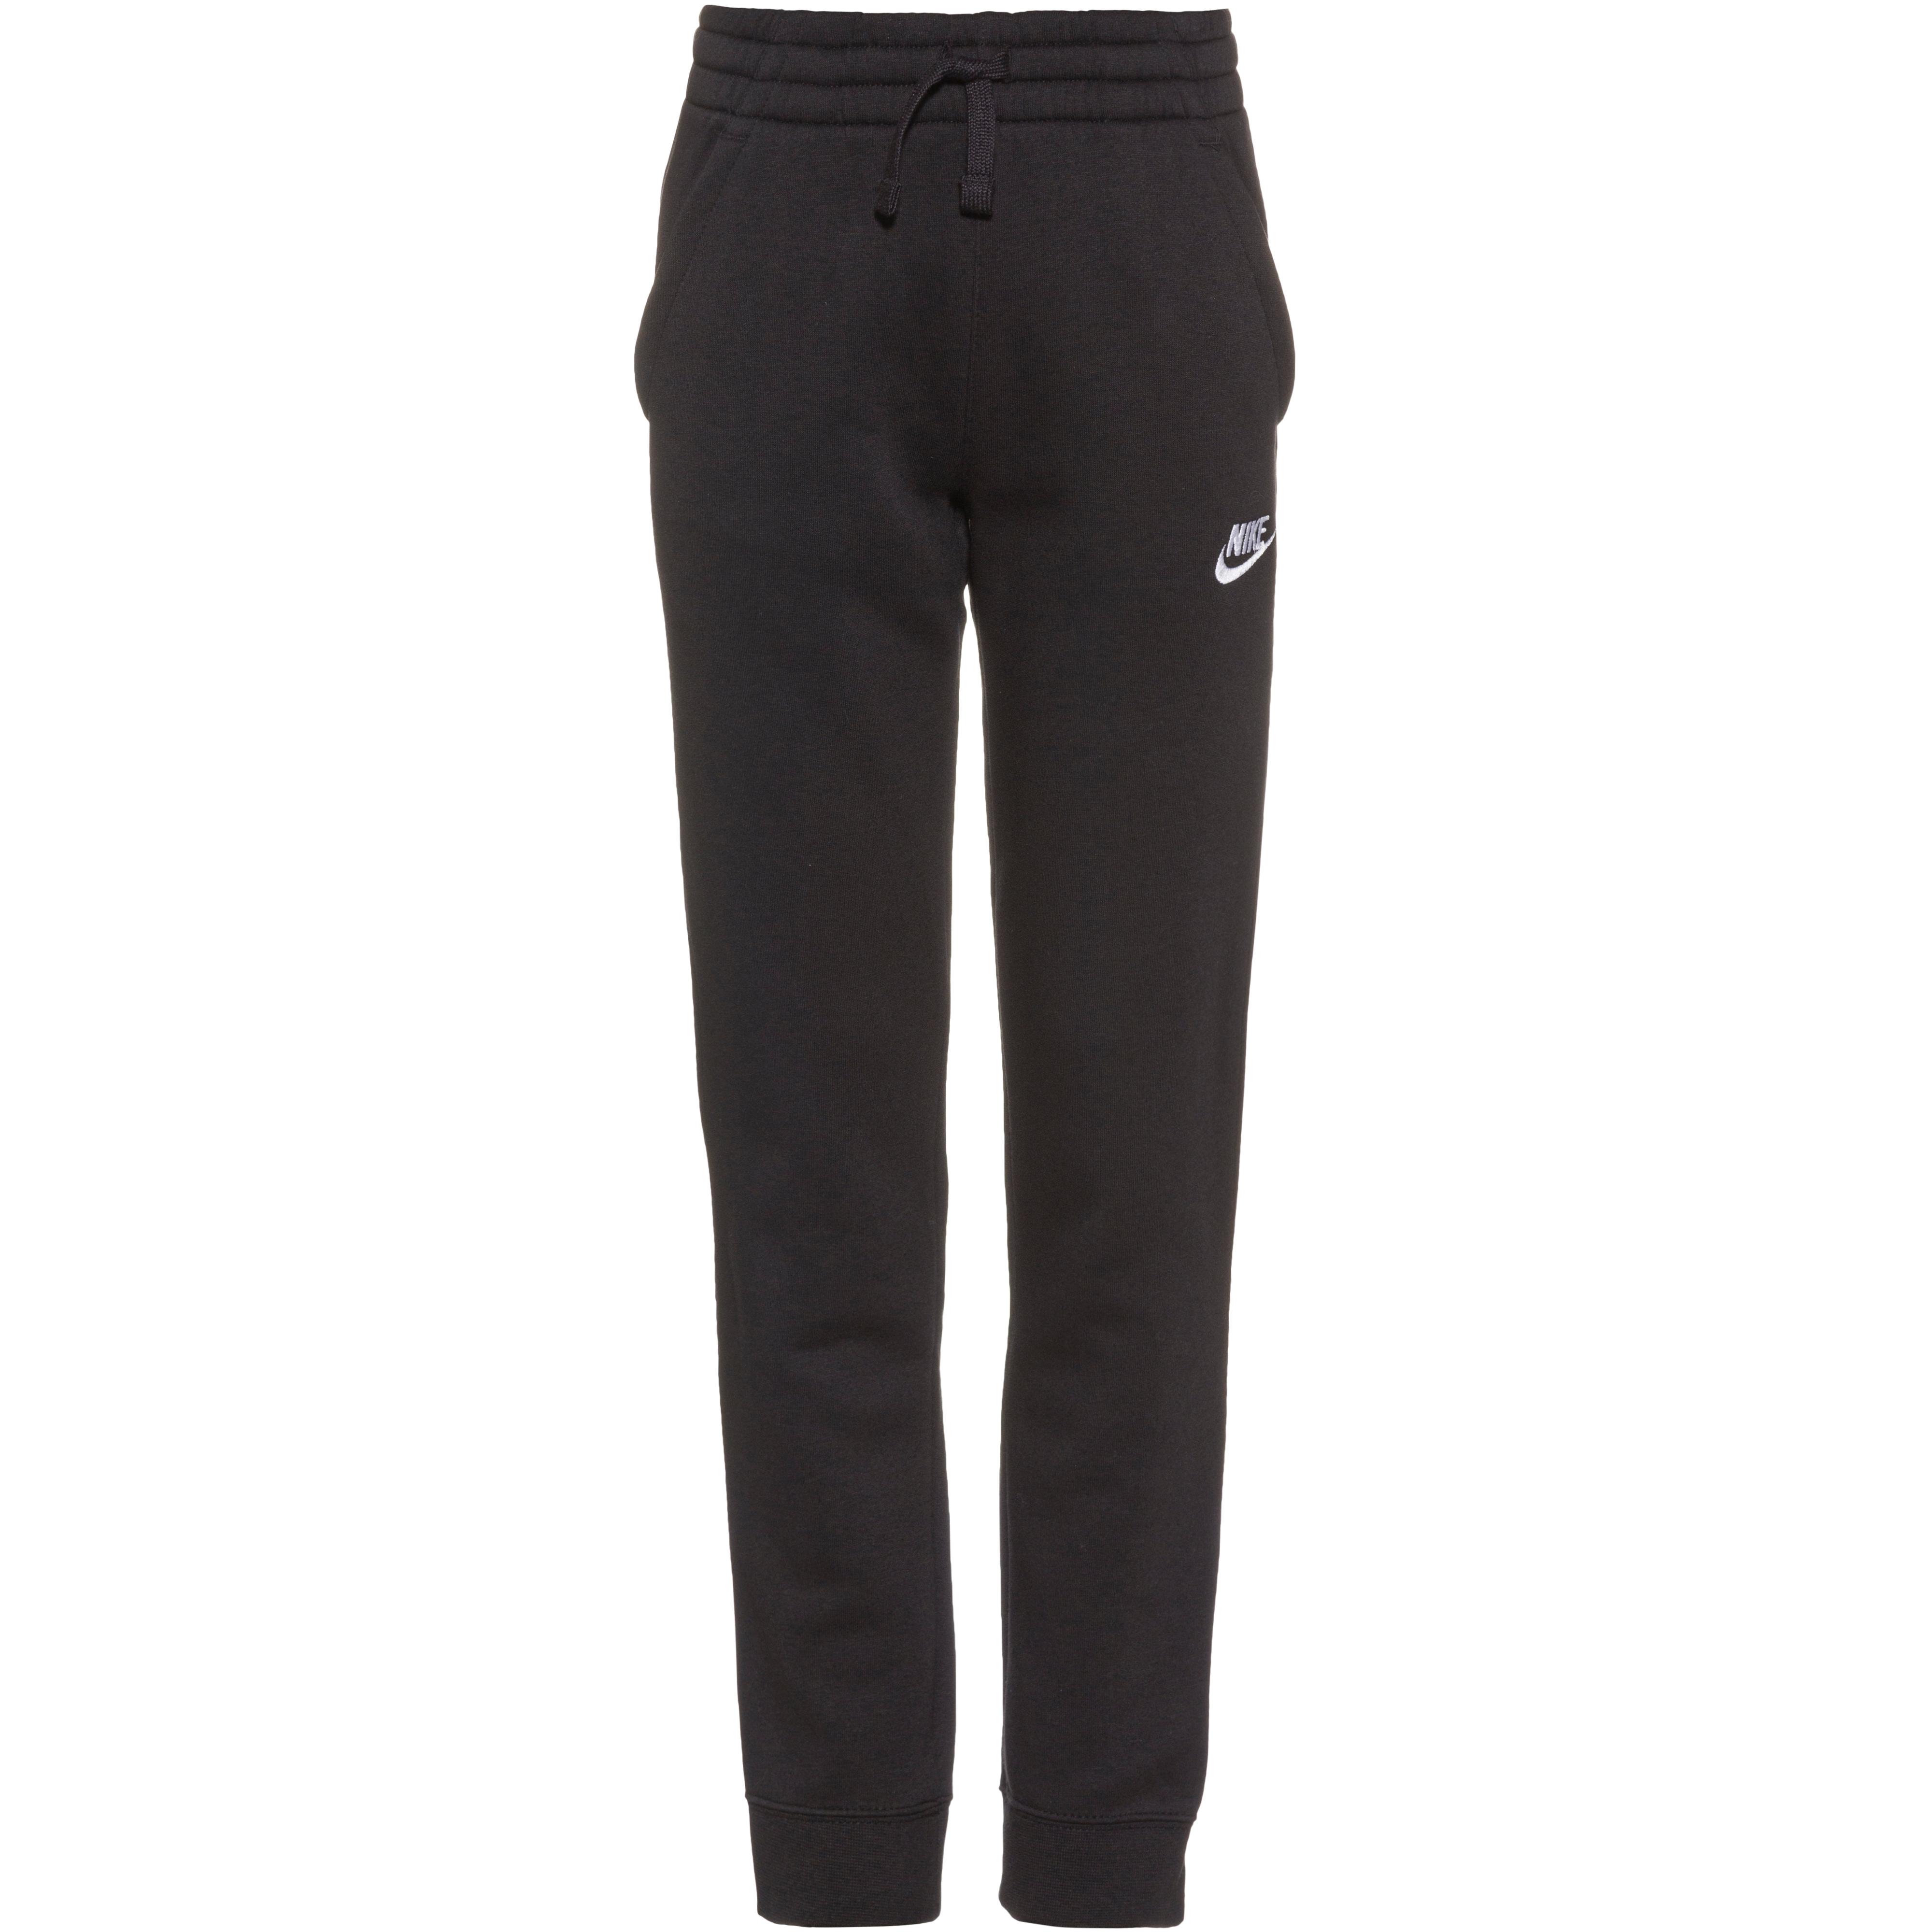 Shop CORE im Nike Online von Trainingsanzug kaufen Jungen SportScheck black-black-black-white NSW